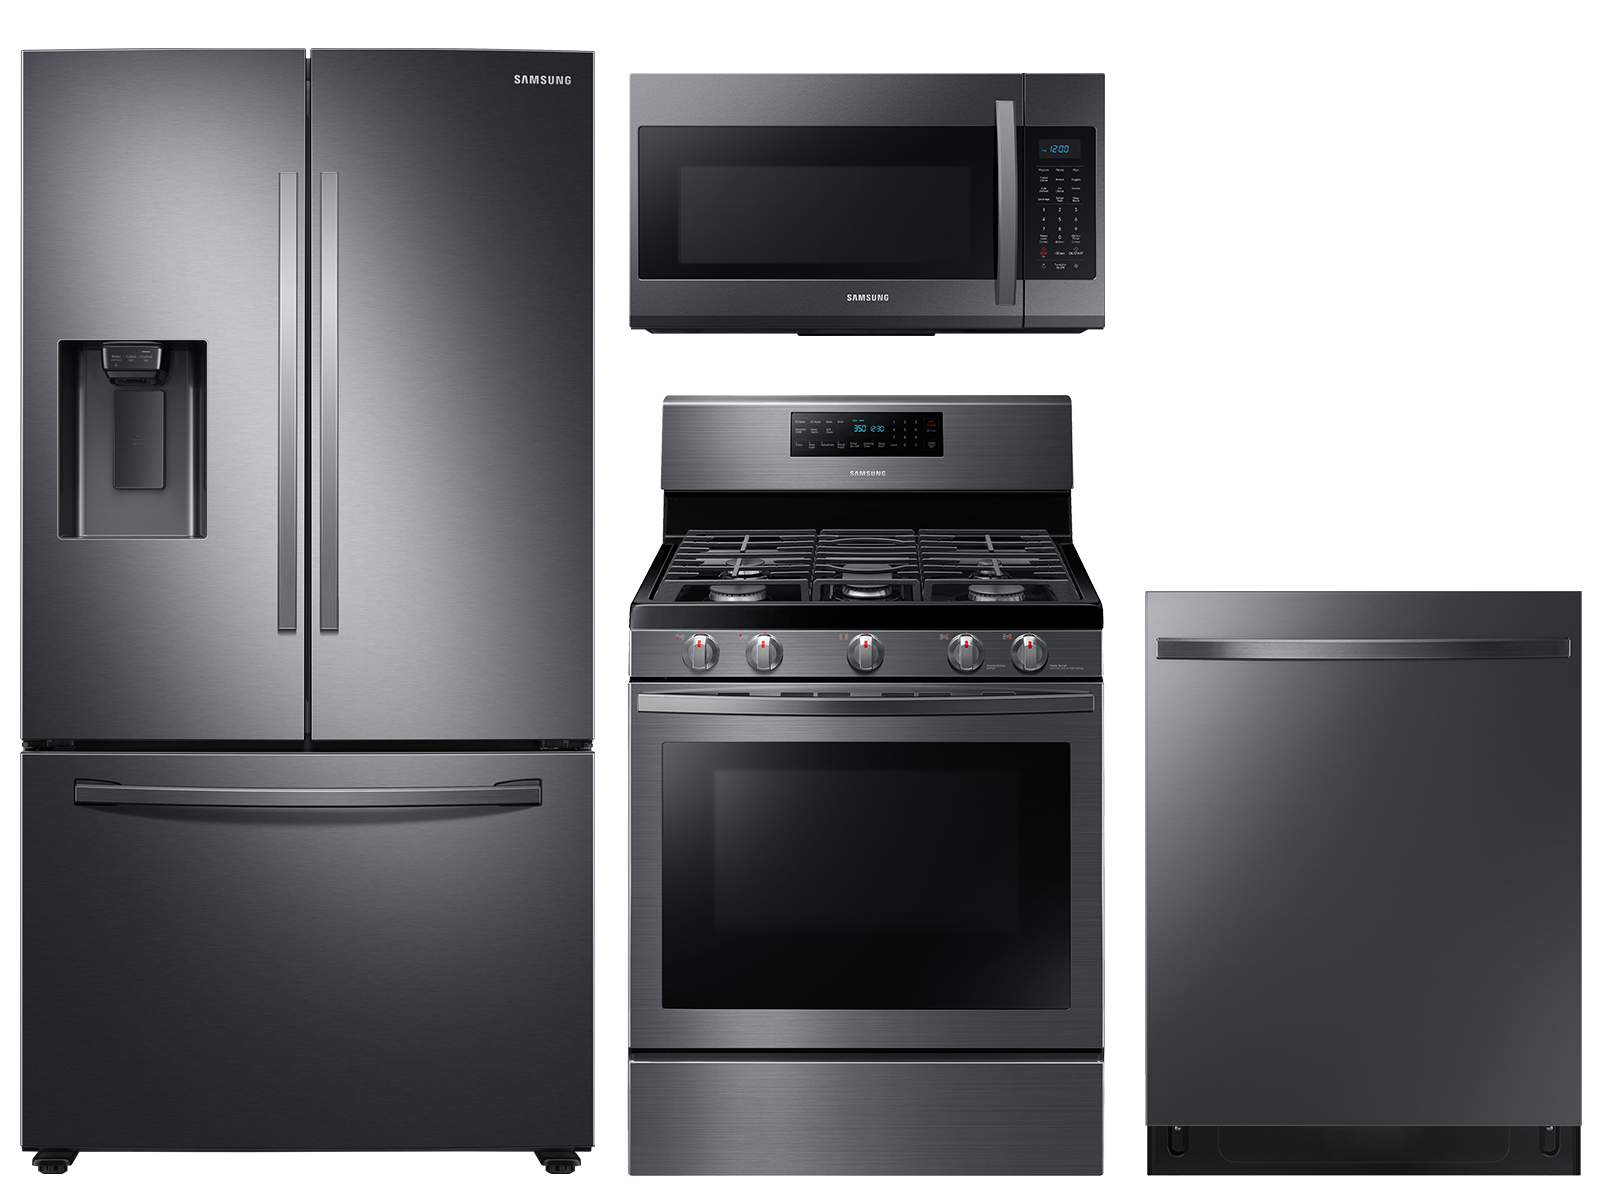 Large capacity 3-door refrigerator & gas range package in black stainless